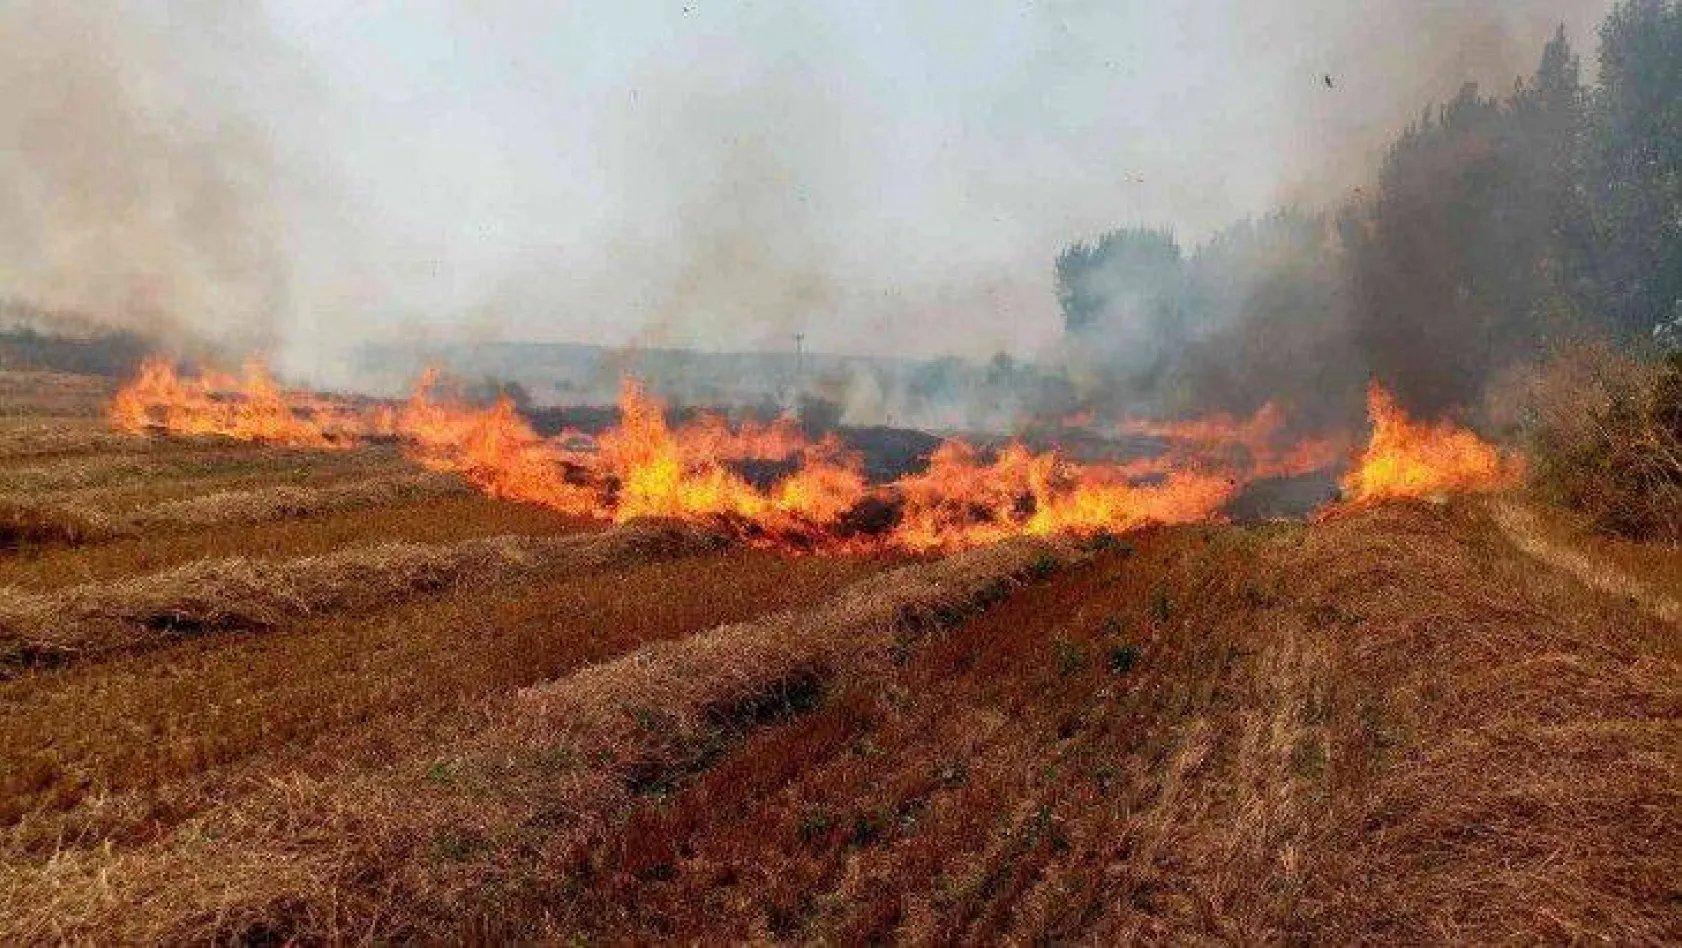 Yangın uyarıları başladı: Anız yakanlara 155 bin lira ceza